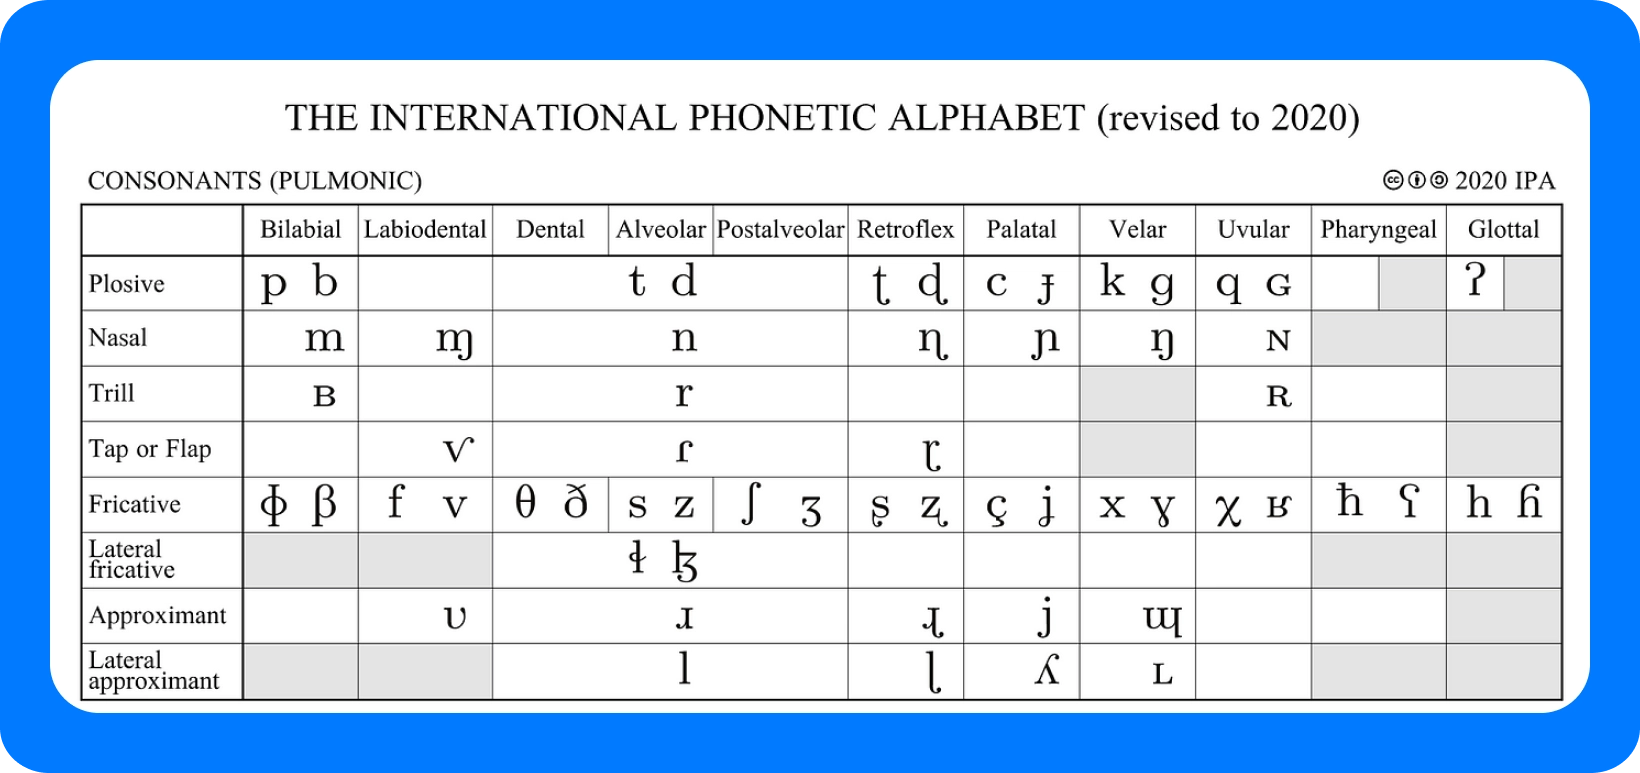 Tabulka mezinárodní fonetické abecedy pro souhlásky, revidovaná v roce 2020, s podrobnými údaji o artikulačních bodech.